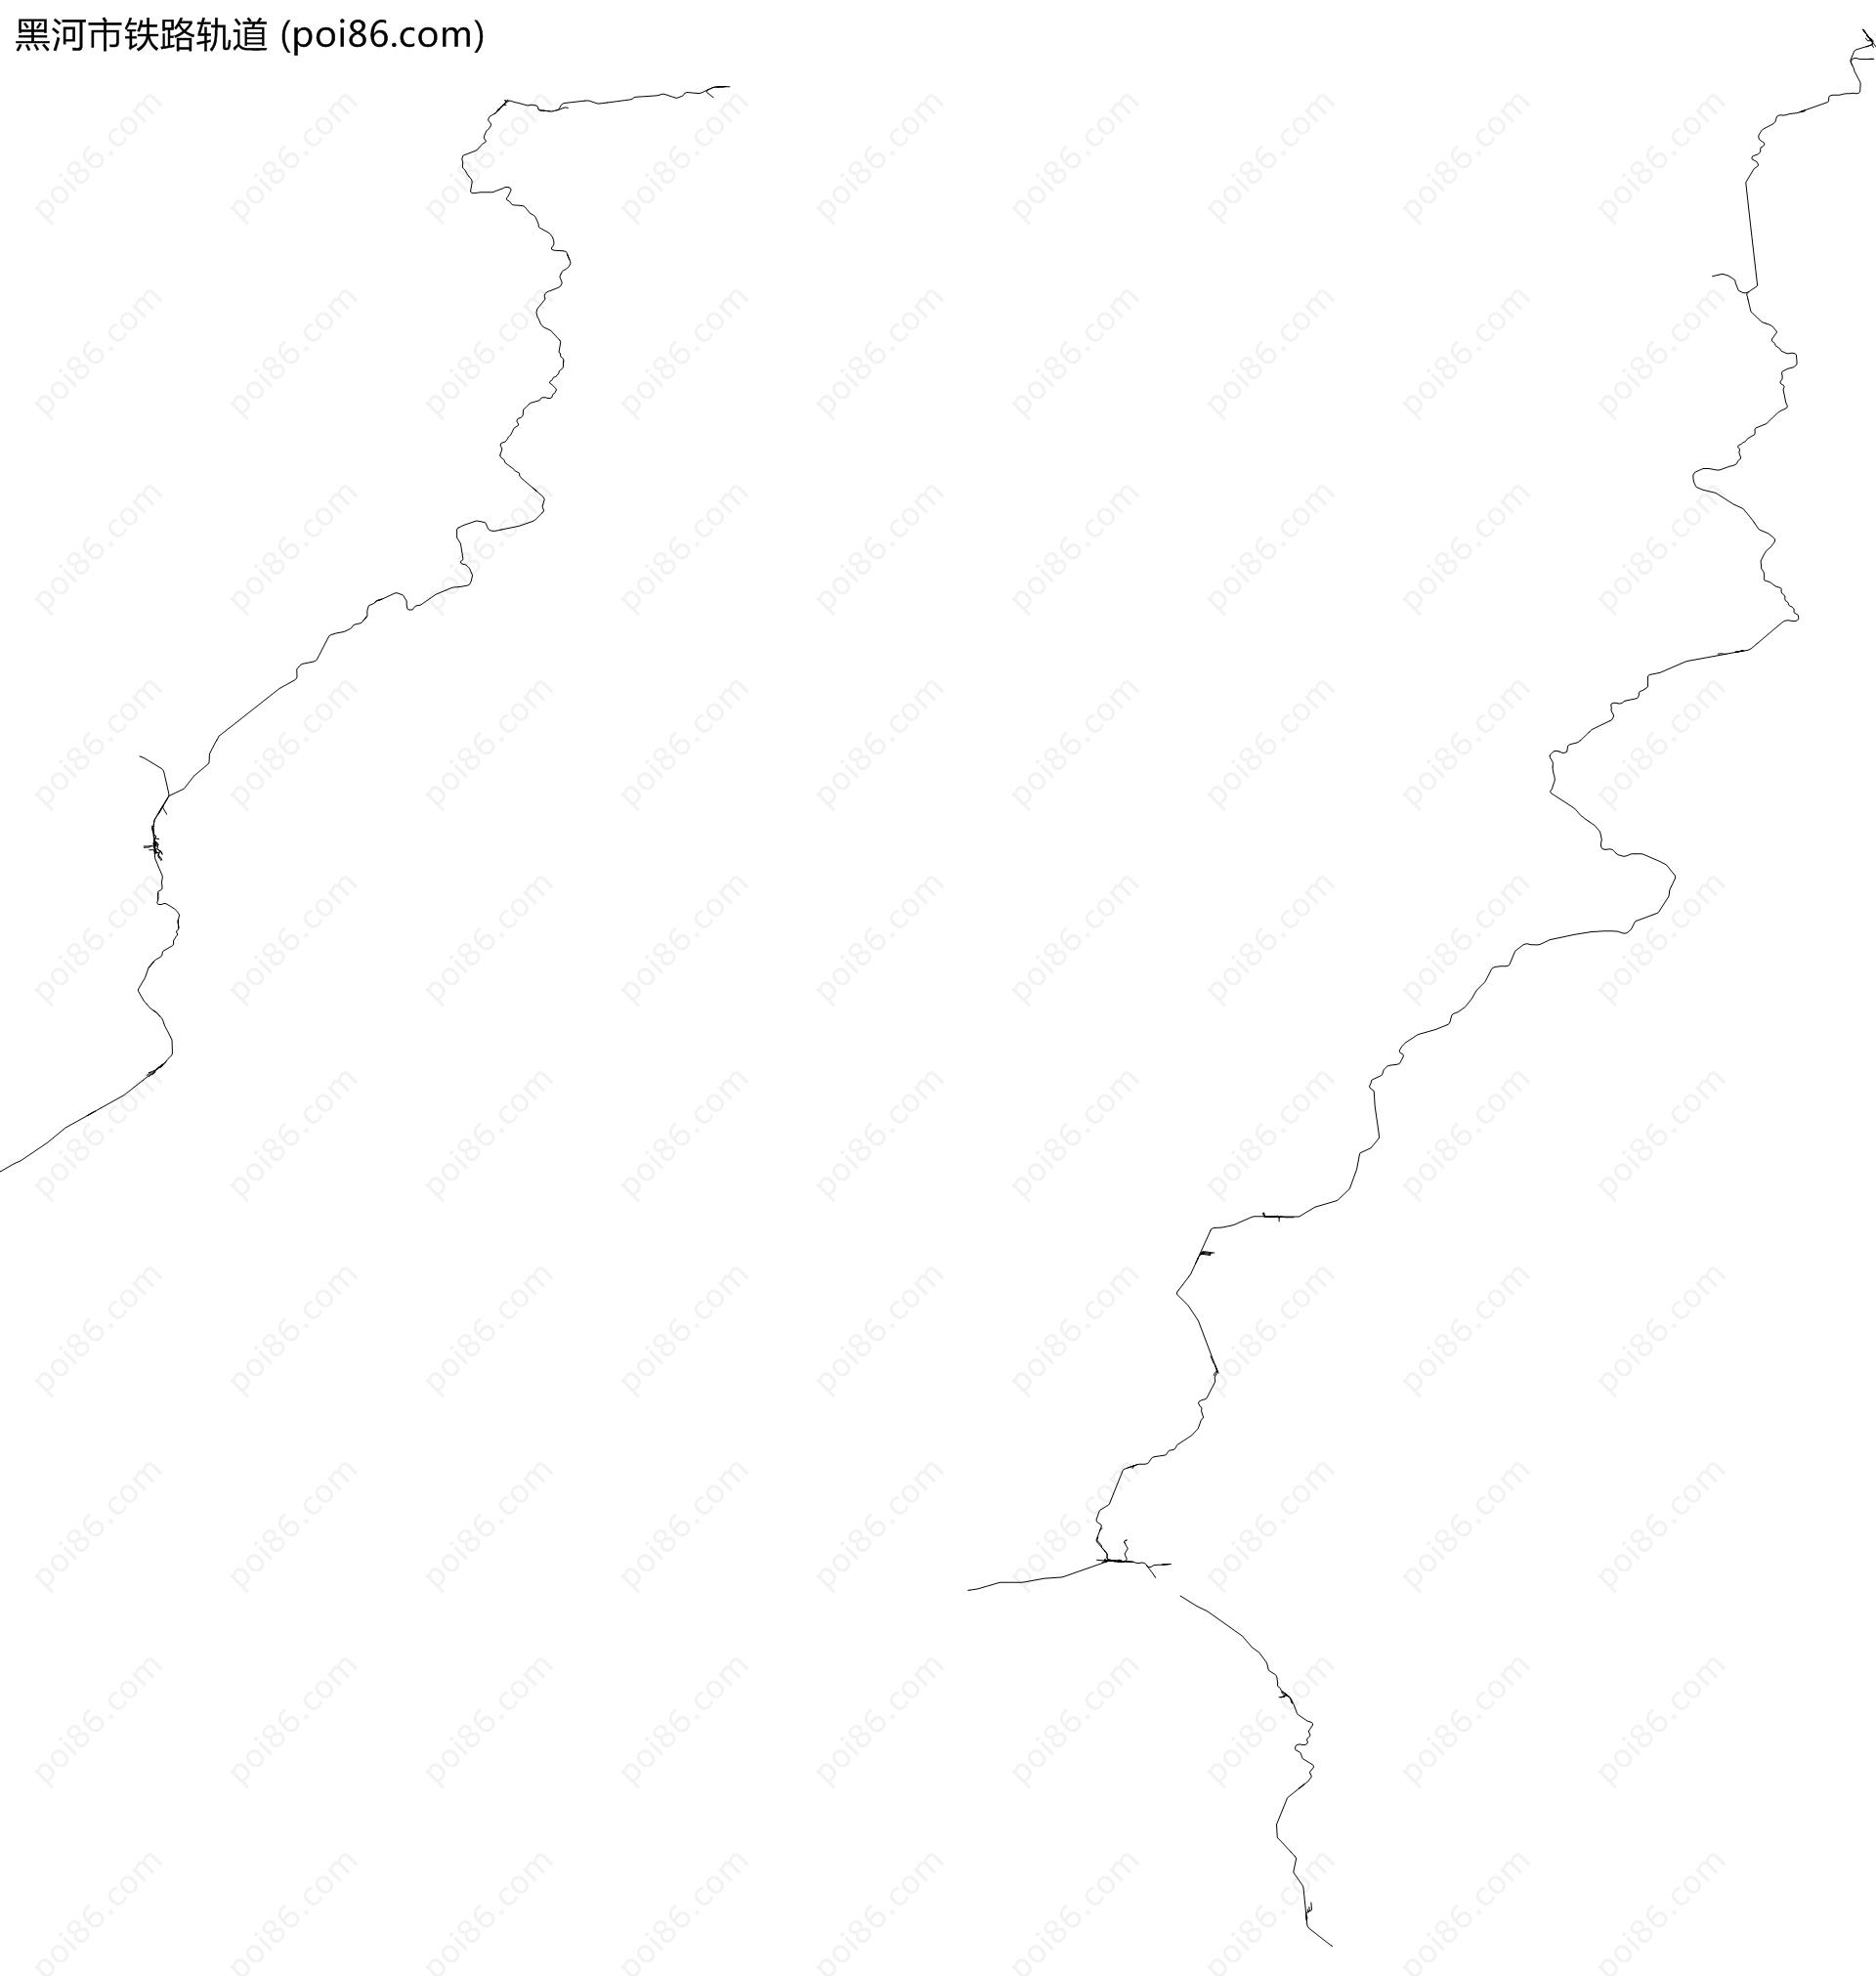 黑河市铁路轨道地图